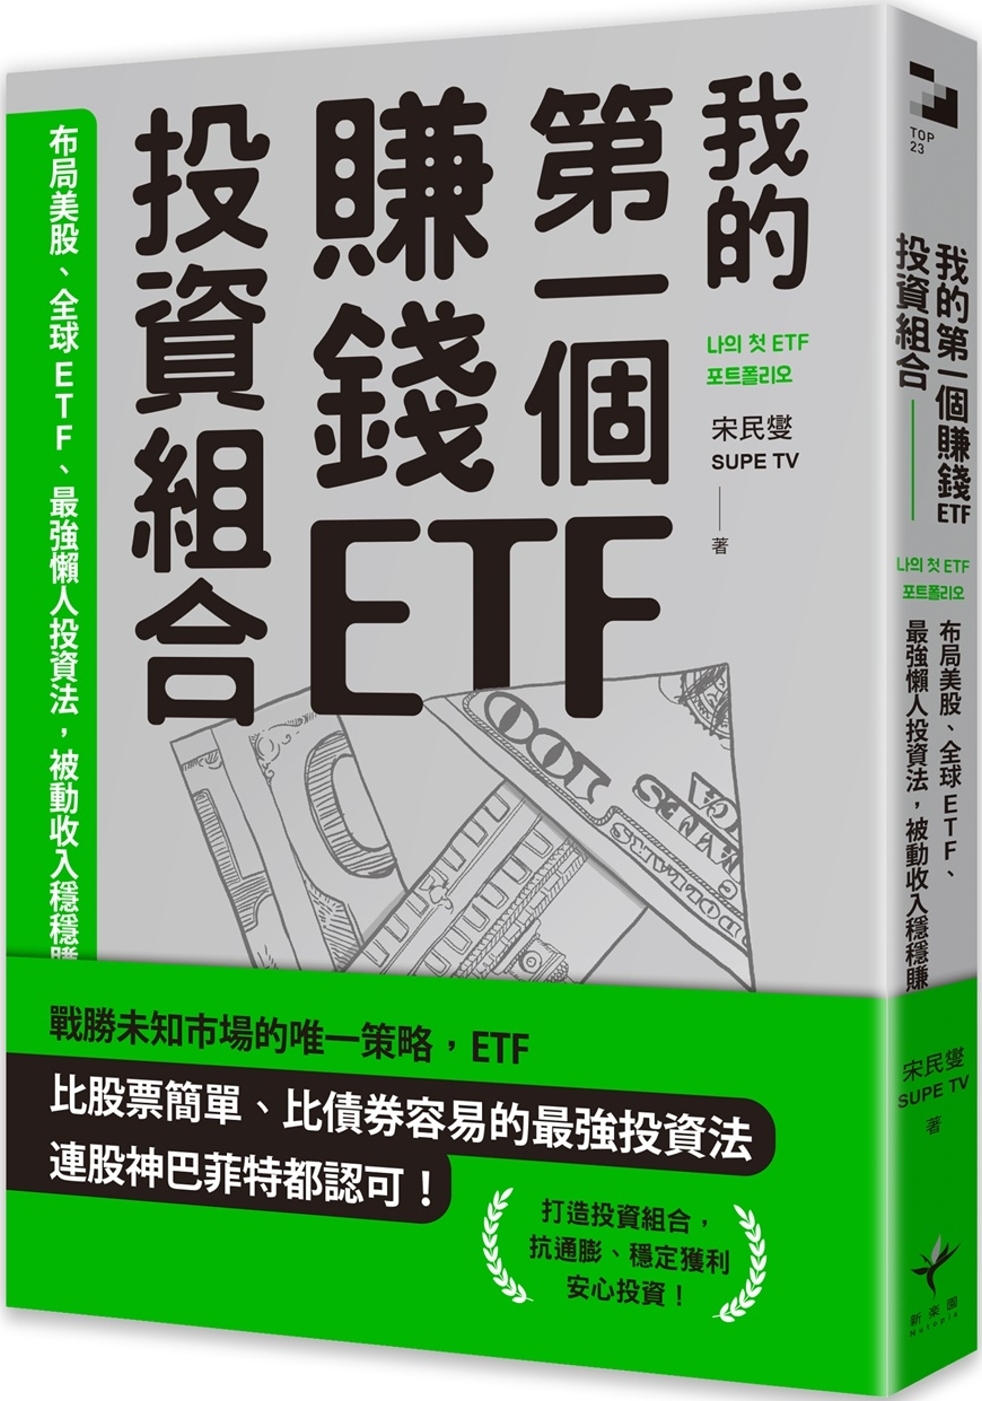 我的第一個賺錢ETF投資組合：布局美股、全球ETF，最強懶人...